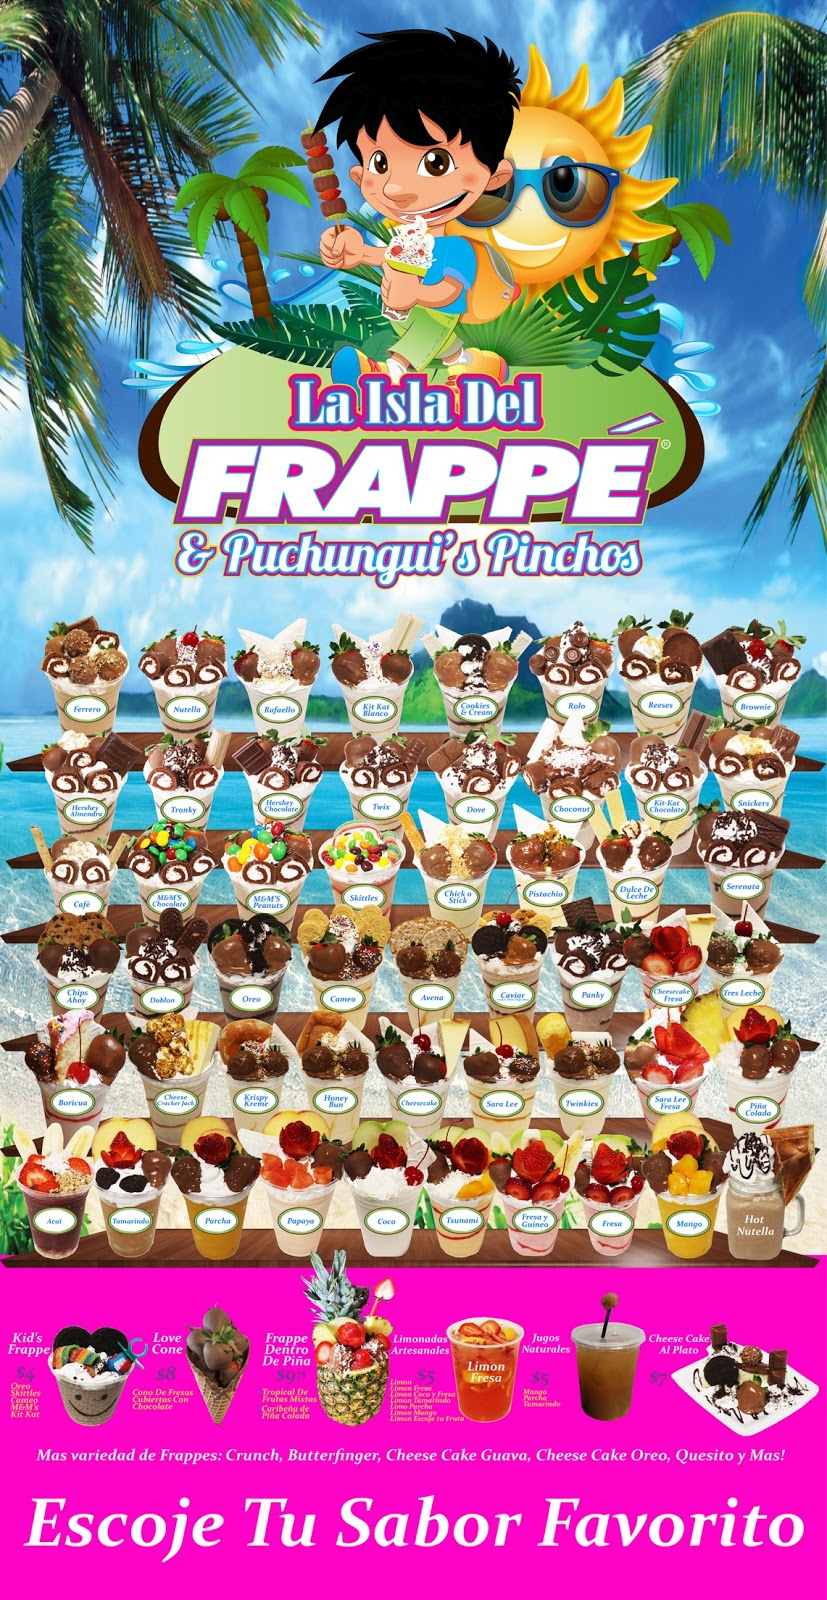 La Isla Del Frappe & Puchunguis Pinchos | 7401 E Colonial Dr, Orlando, FL 32807 | Phone: (407) 300-2196